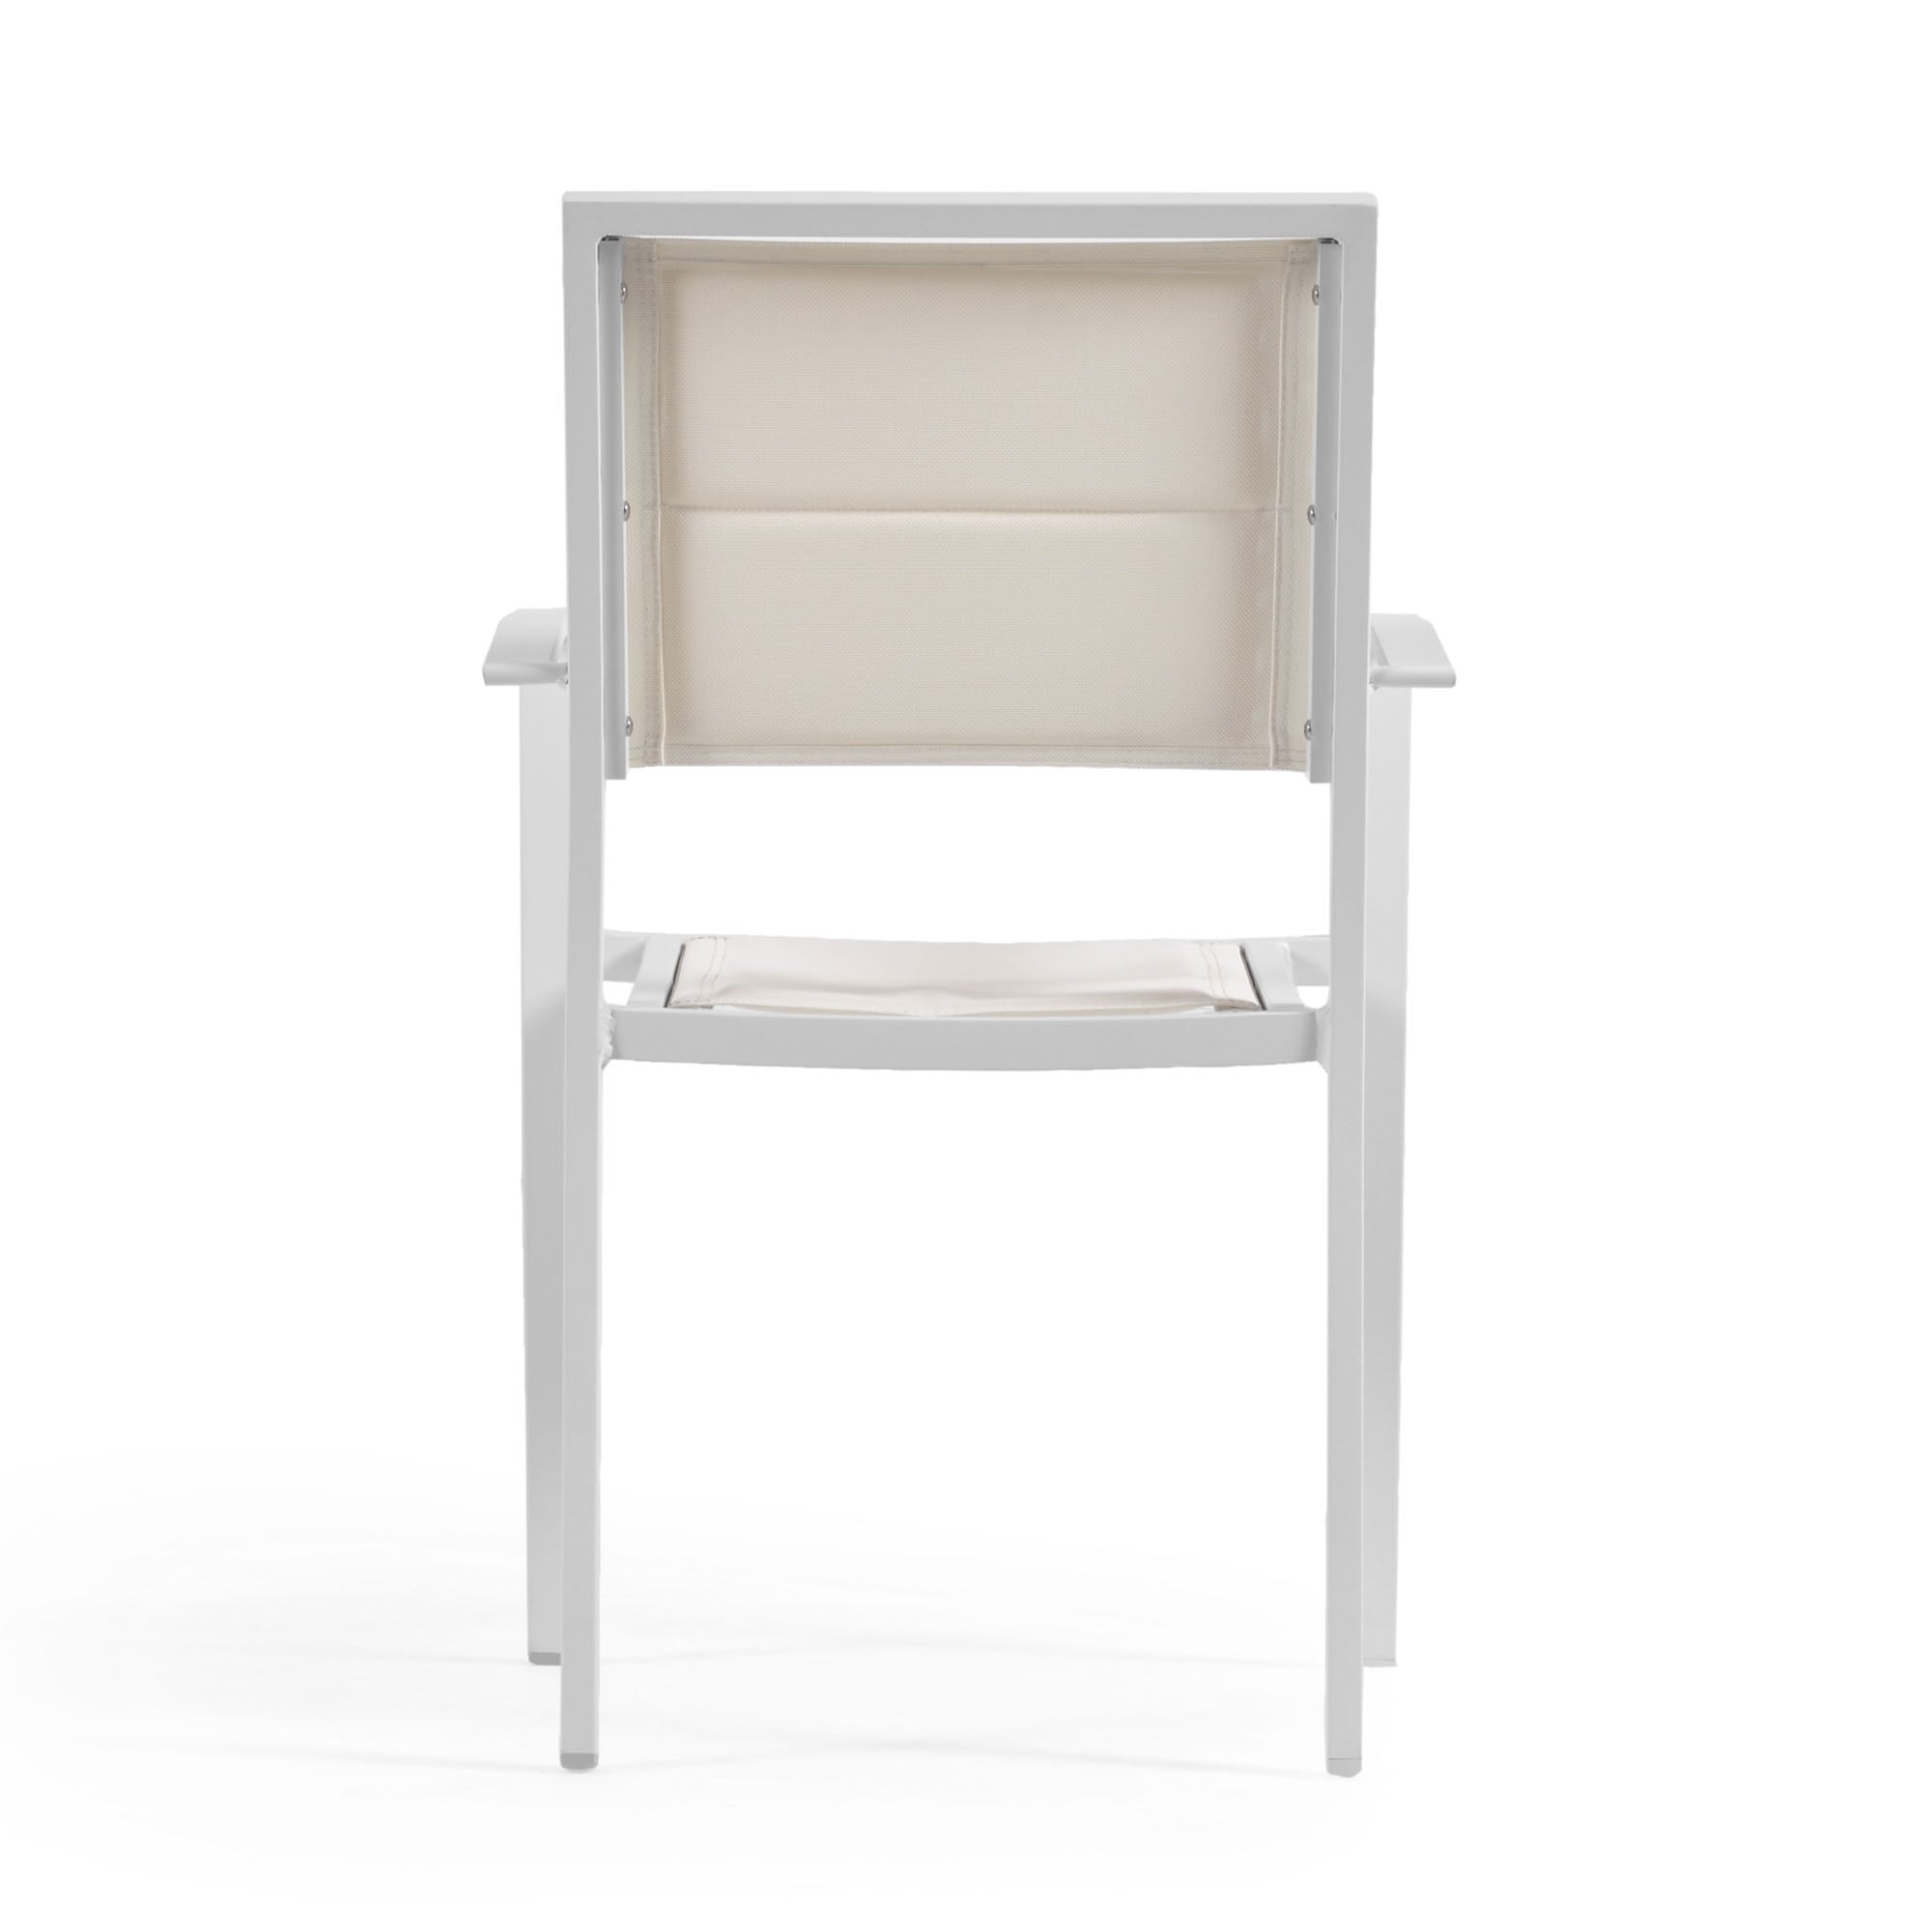 Sirley egymásba rakható kültéri szék fehér alumíniumból és textilénből